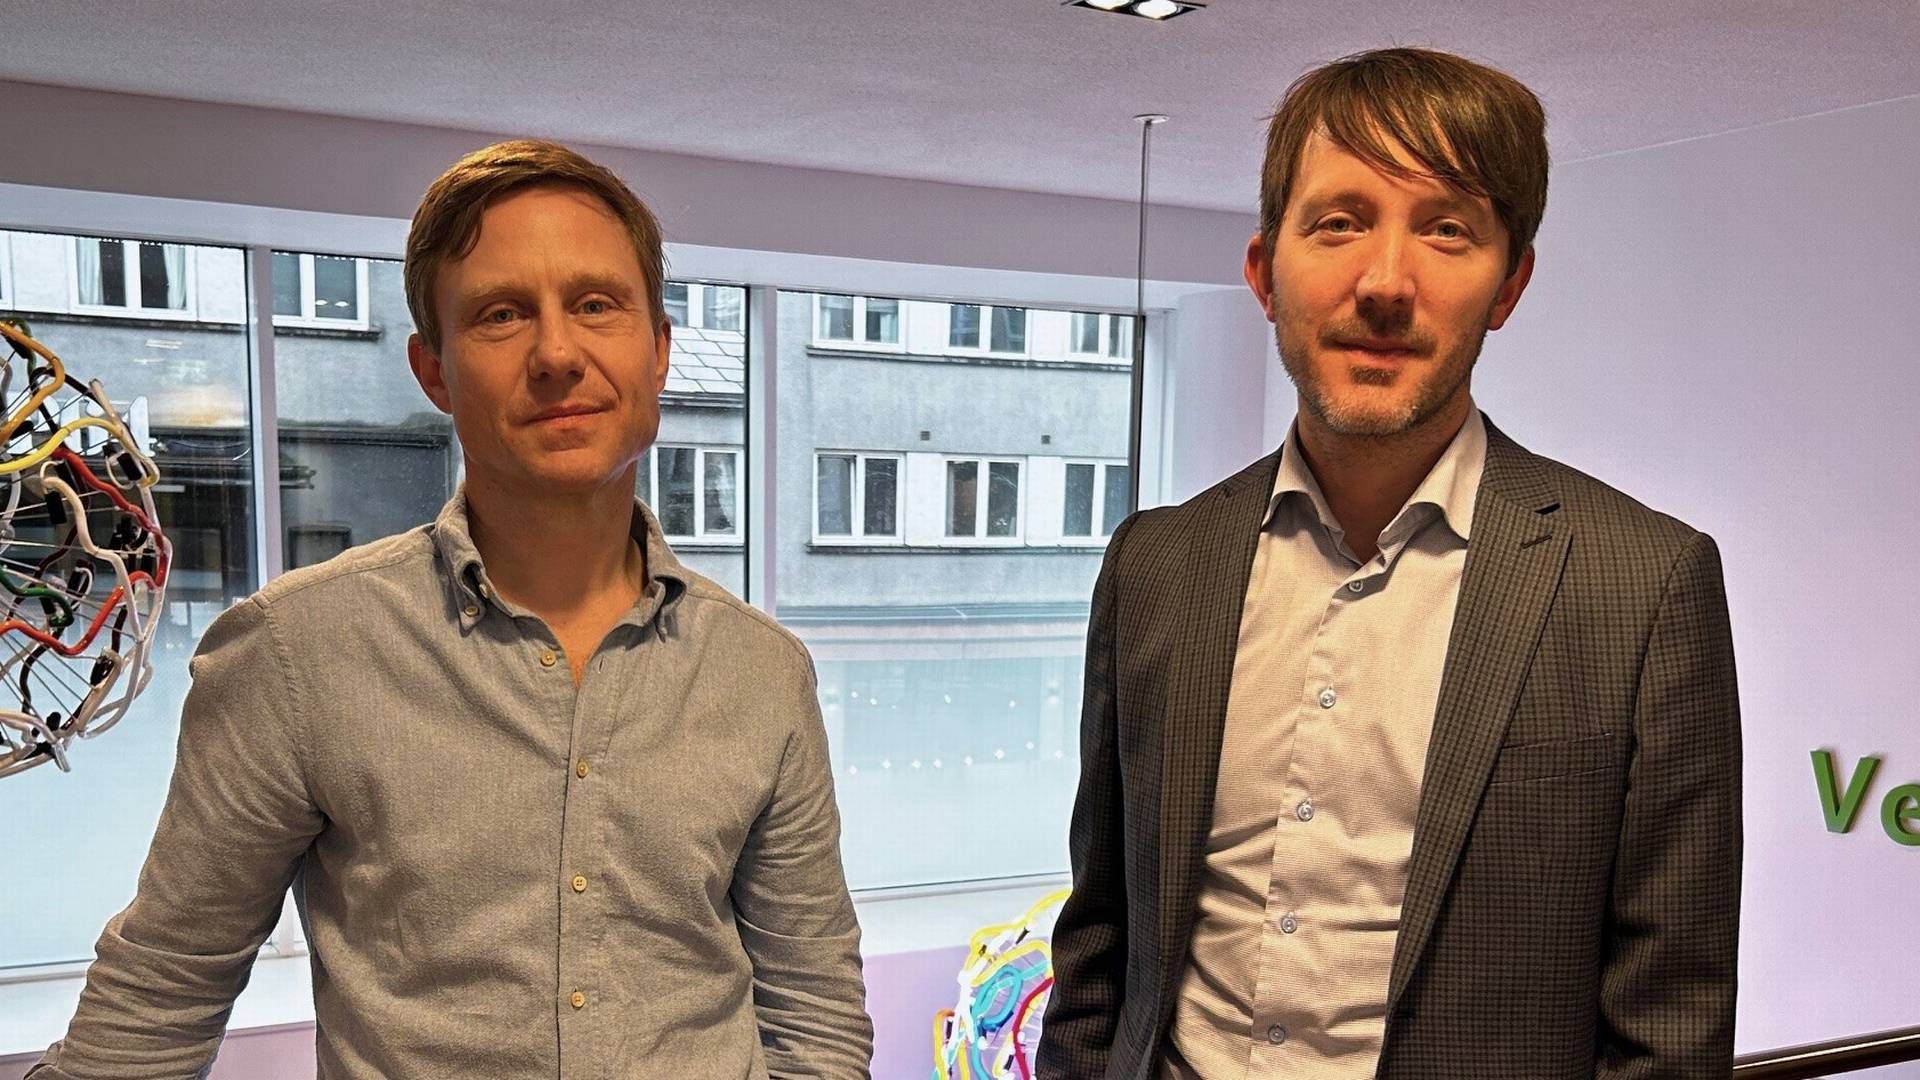 Bjørn Tore Urdal and Karl Storvik manage NOK 8bn through the Eika Norden equity fund. | Photo: Trym Isaksen